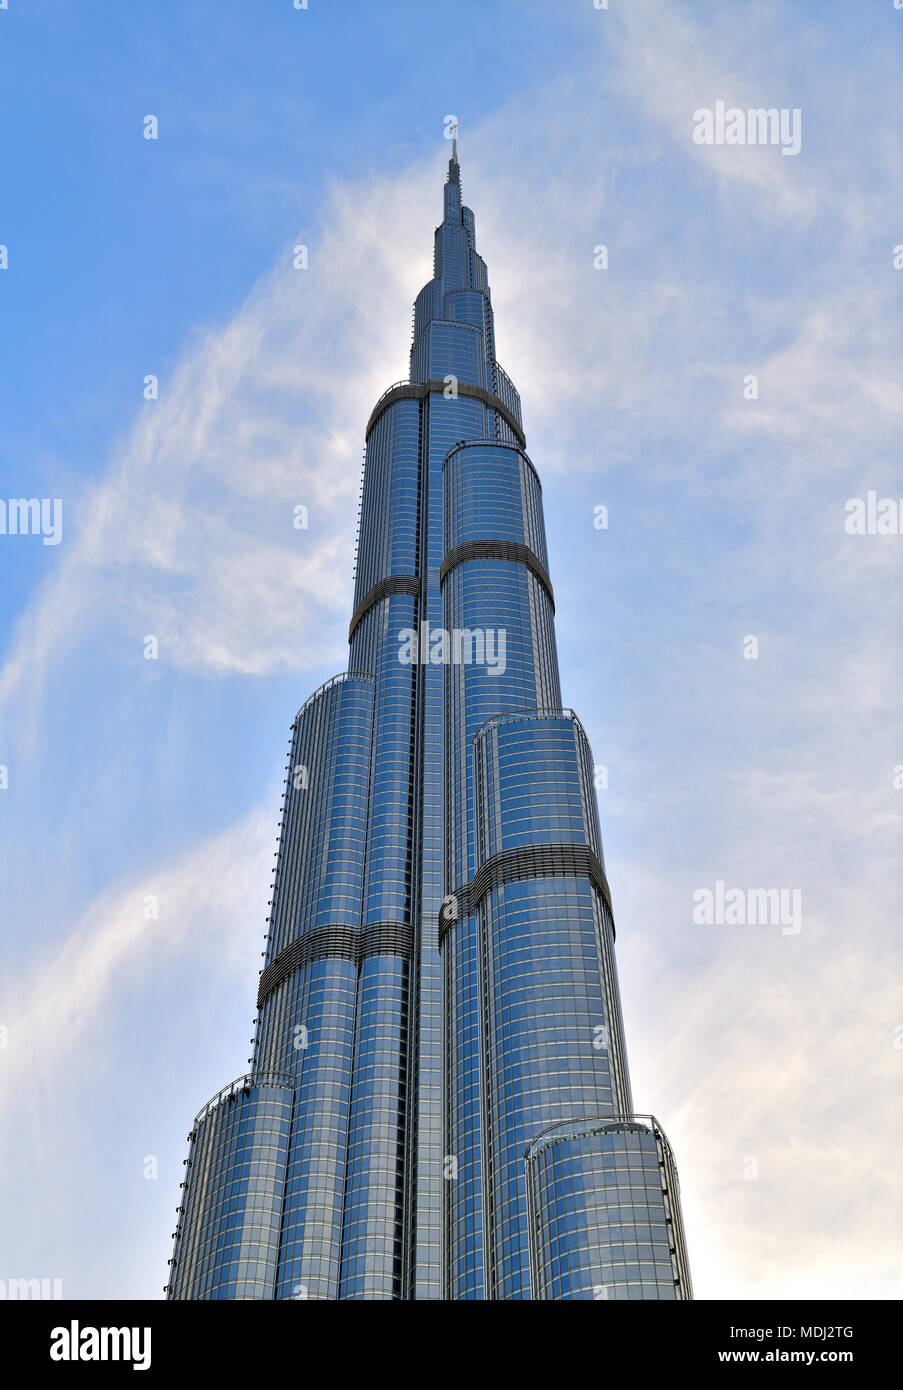 Dubaï, Émirats arabes unis - 8 avril. En 2018. L'édifice, catégorie gratte-ciel Burj Khalifa est la plus élevée au monde Banque D'Images